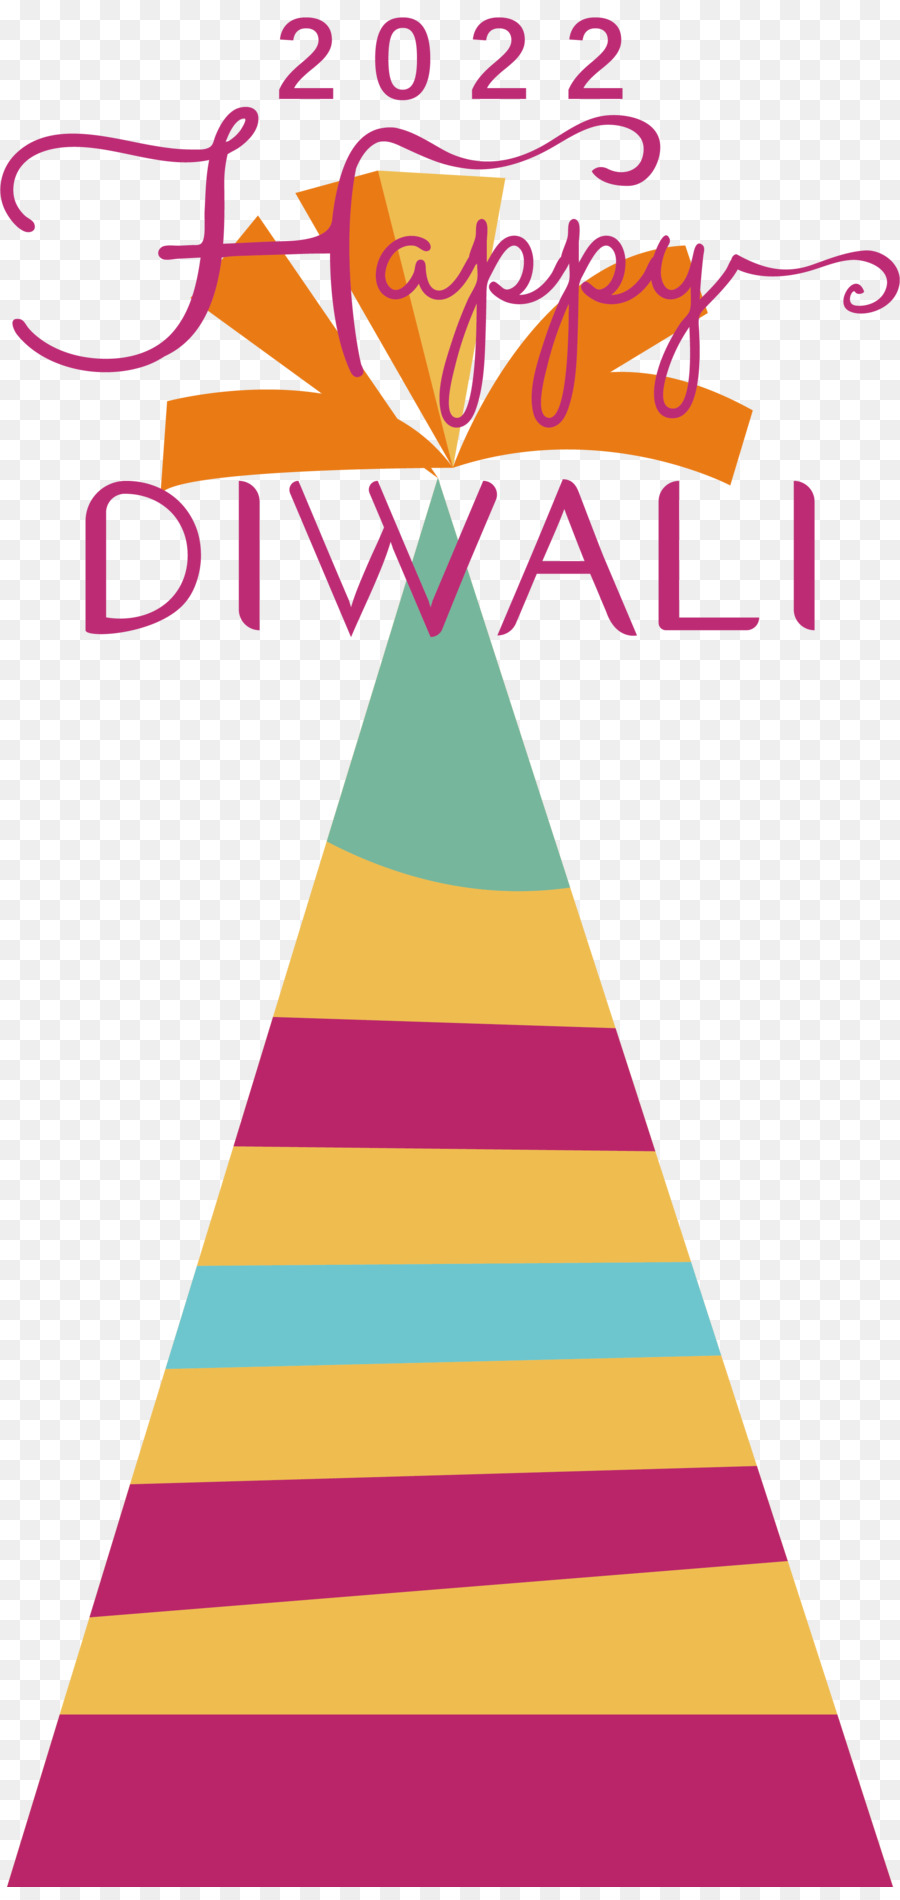 Diwali，Divali PNG